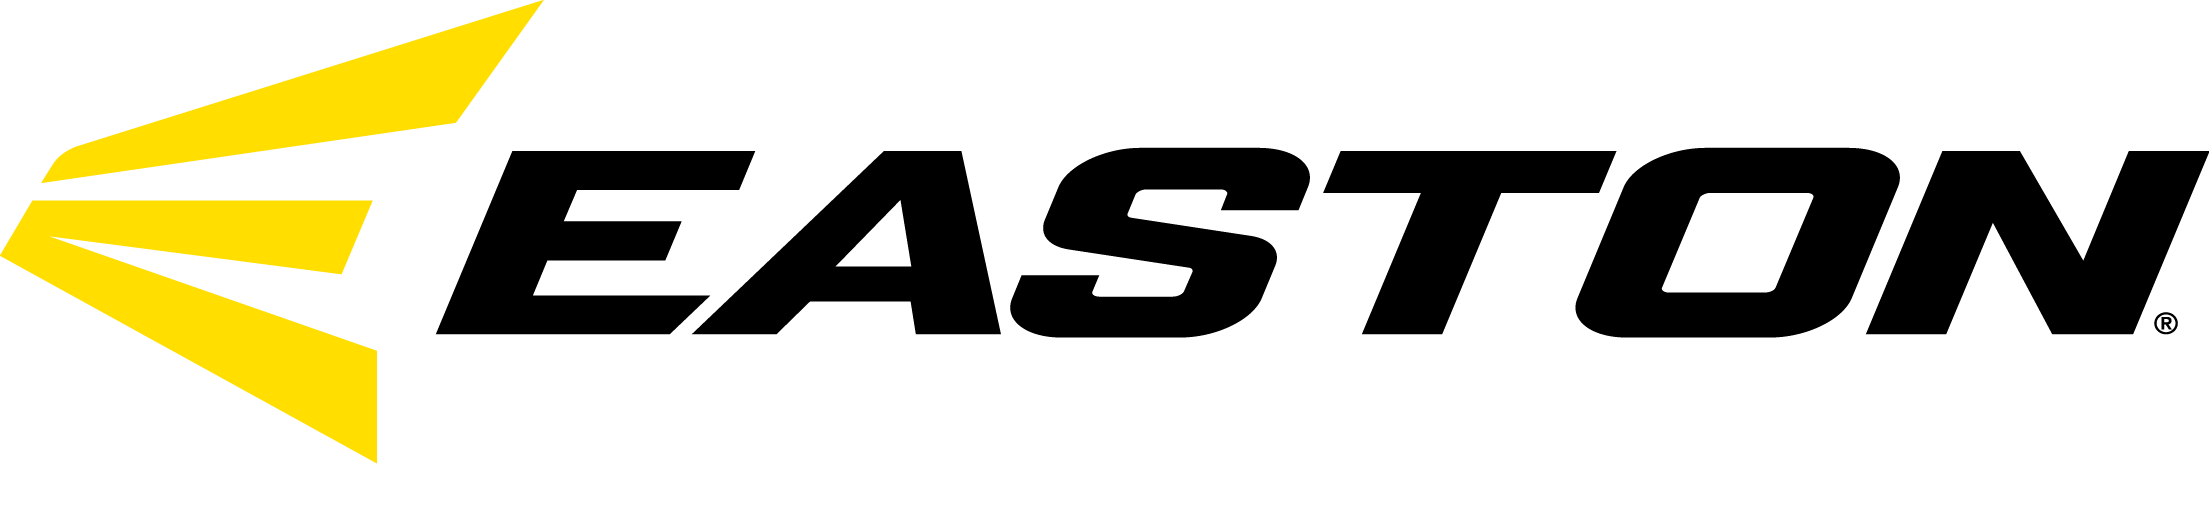 Easton-Logo.png